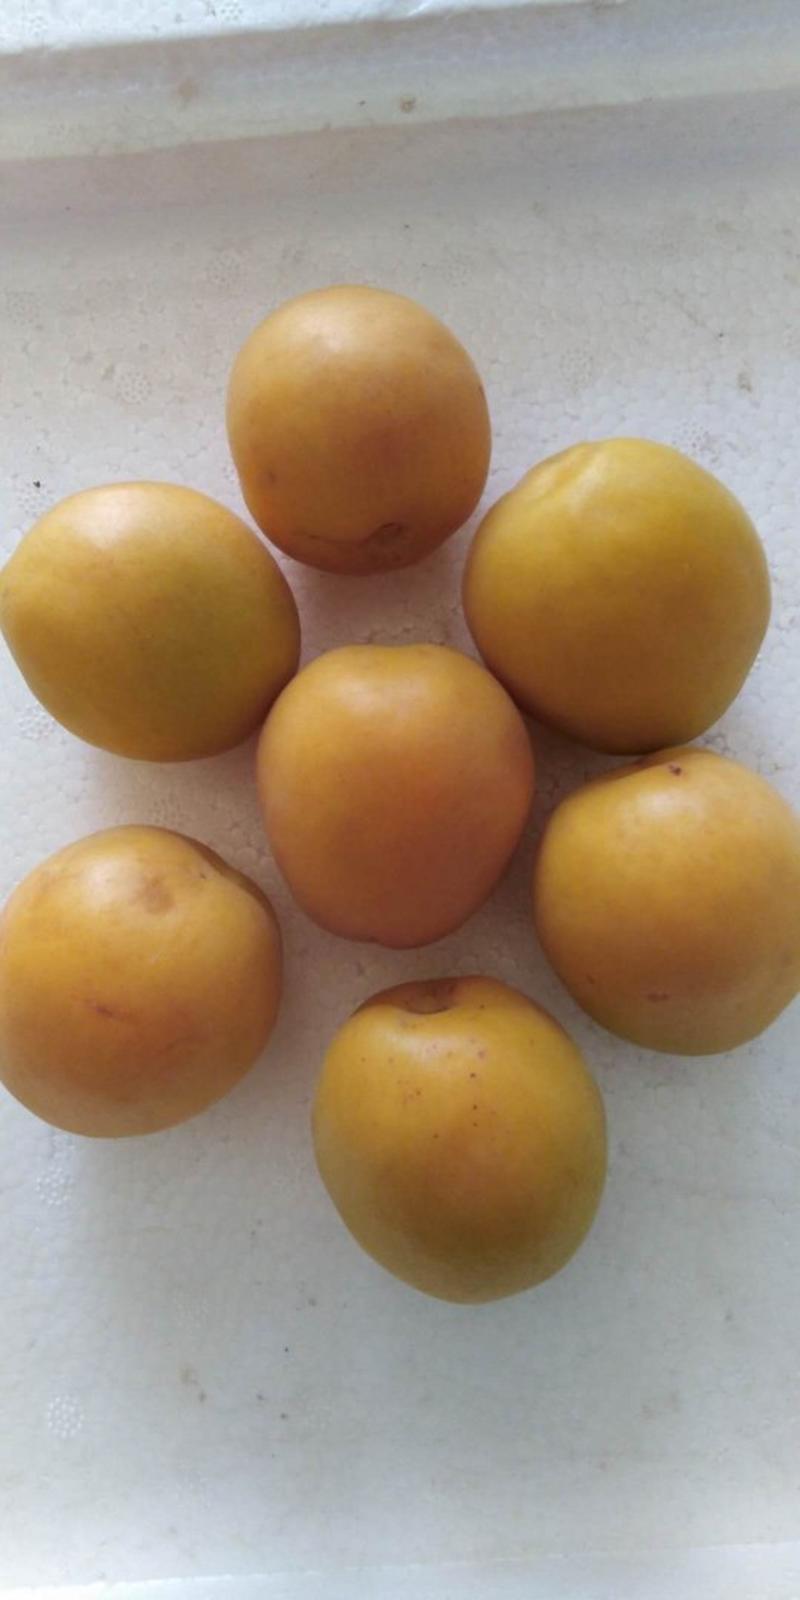 荷兰香蜜杏现挖现卖保纯度质量